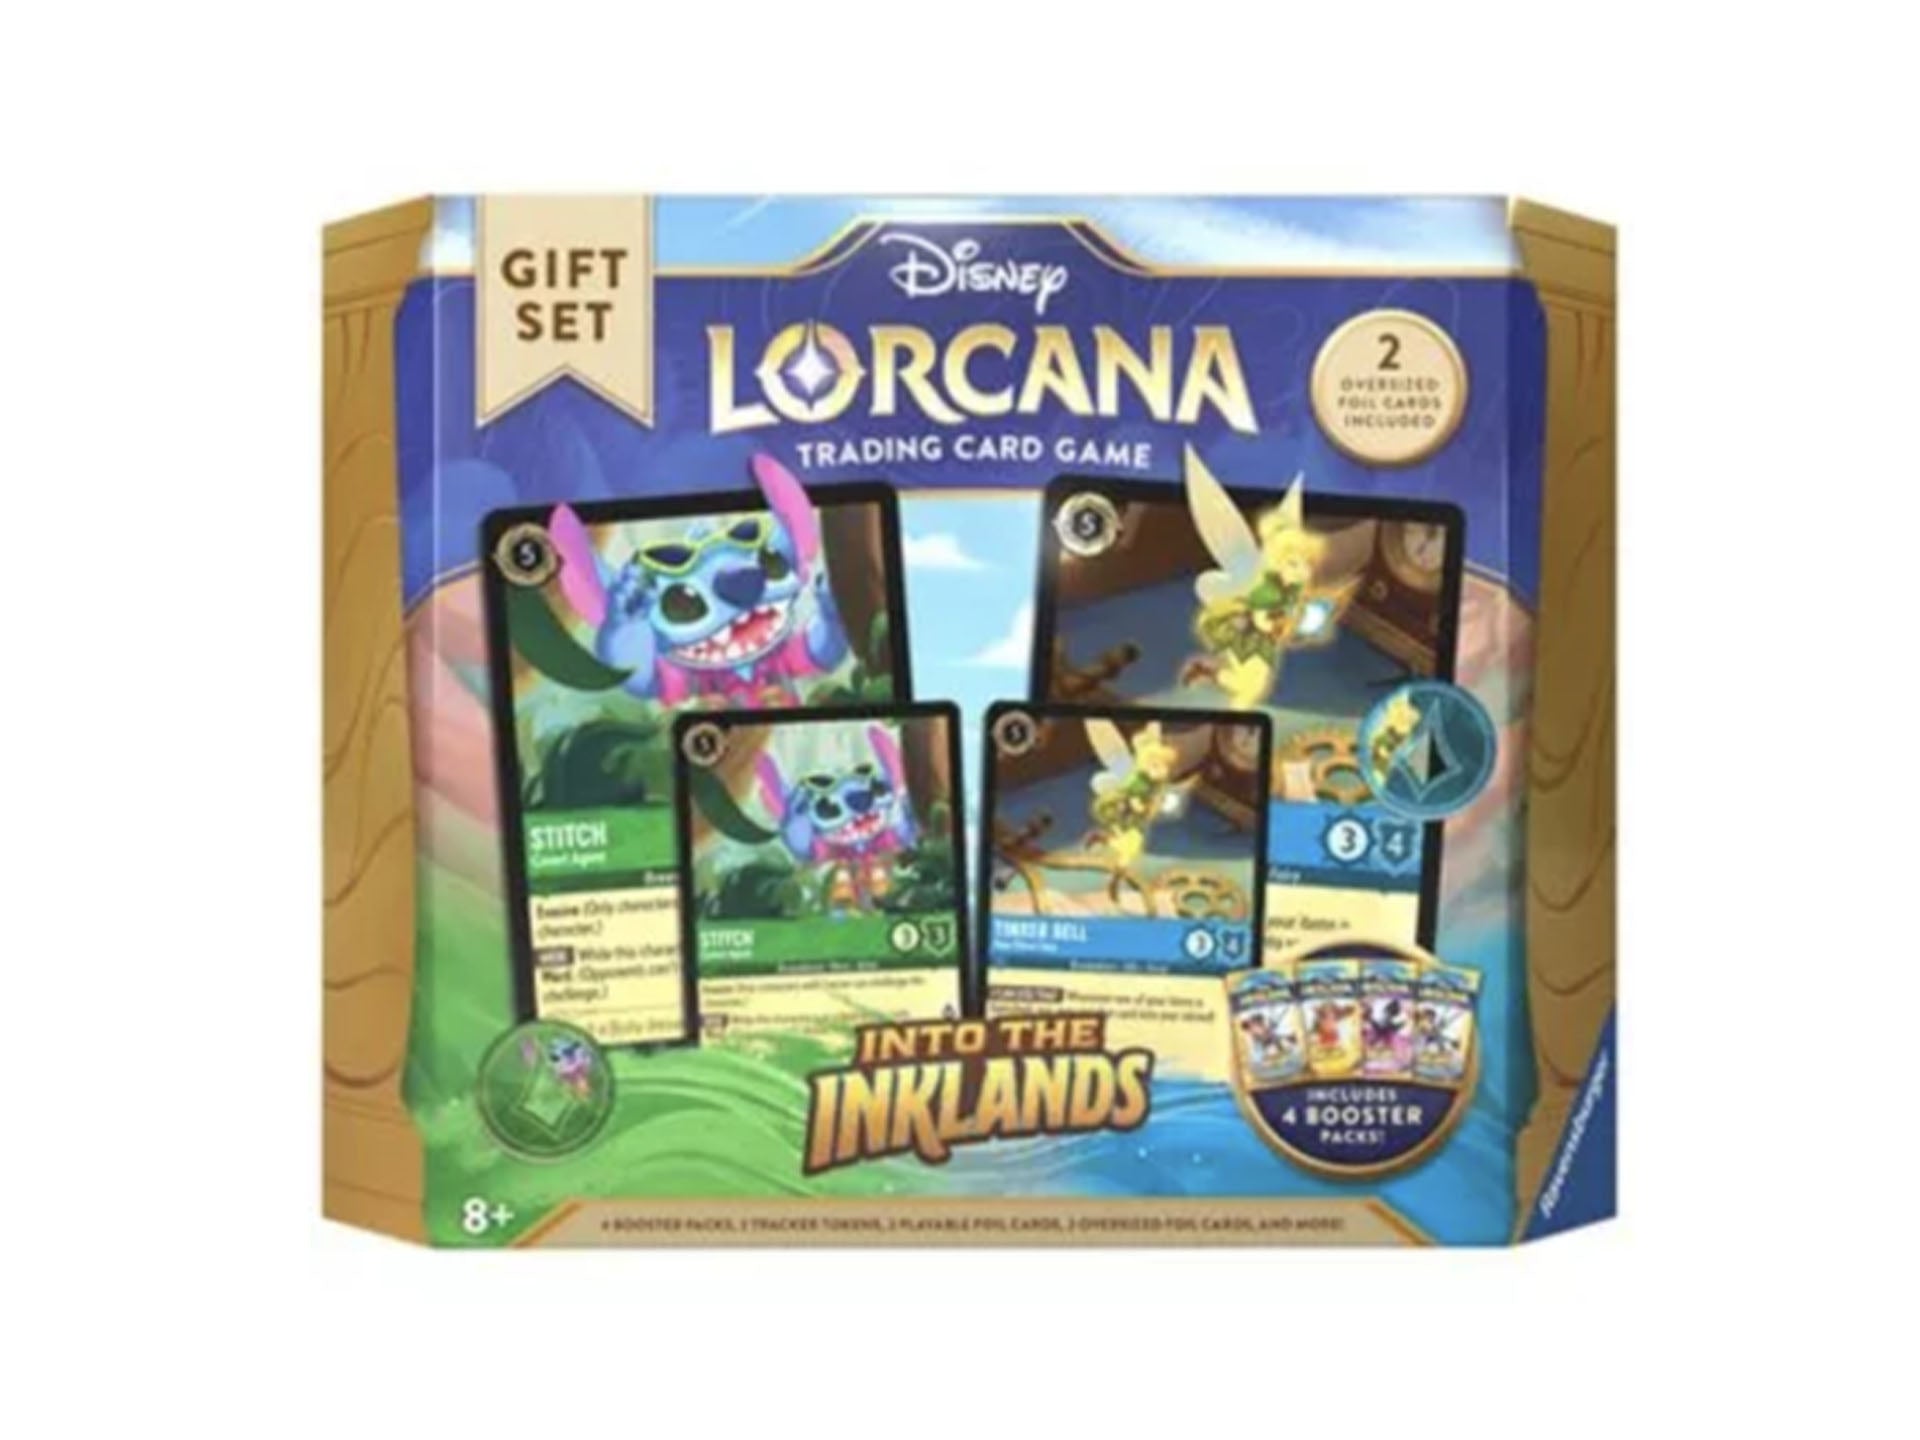 Disney Lorcana giftset "into the inkland"